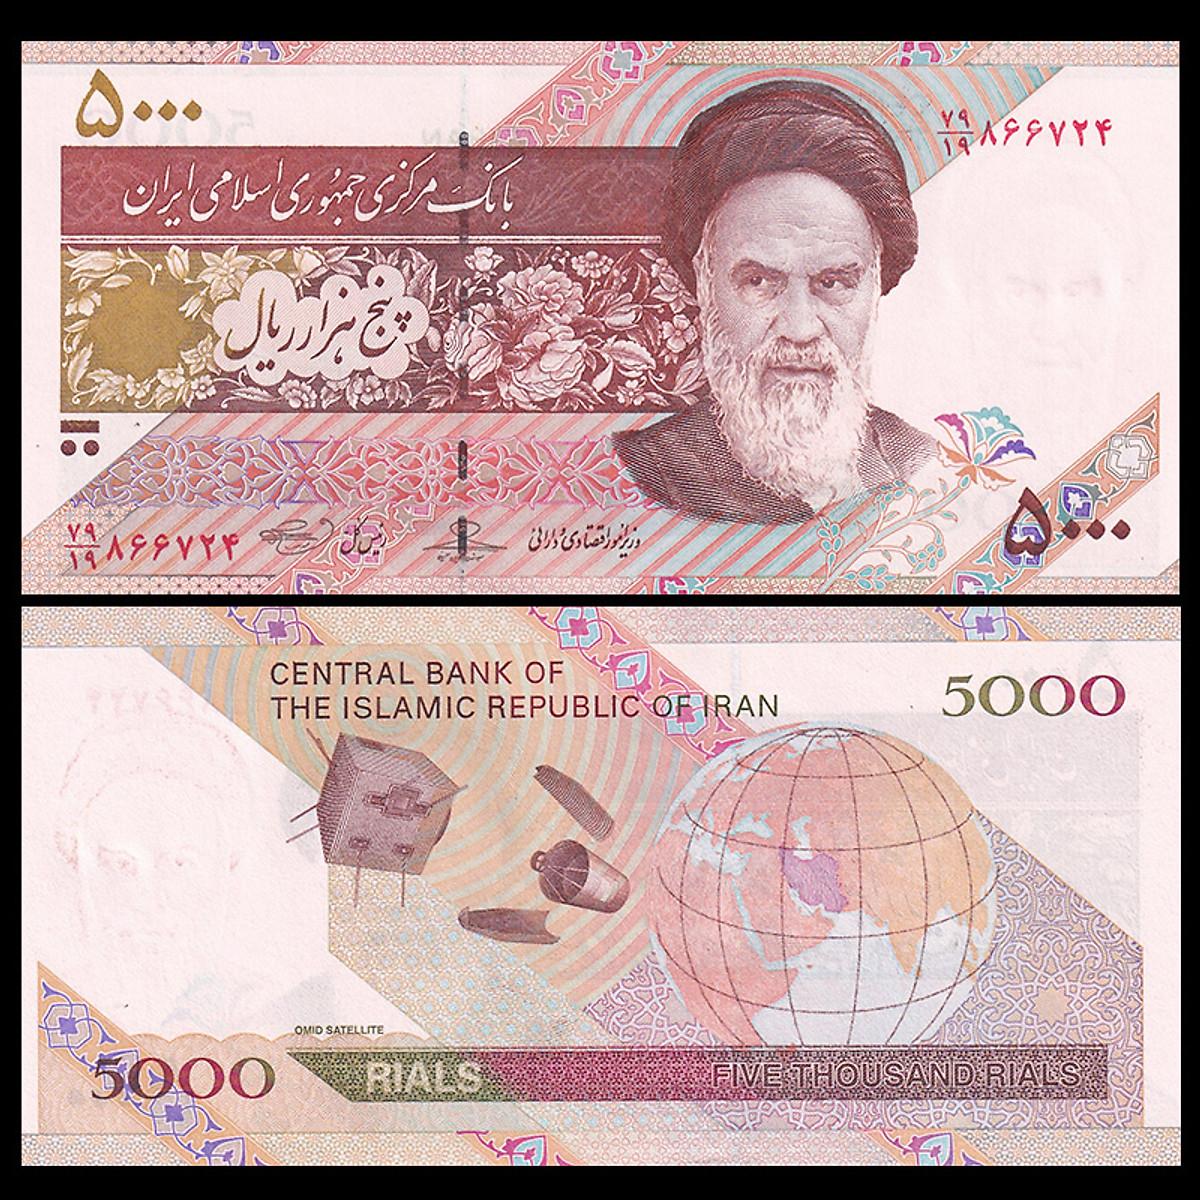 Tiền thế giới 5000 Rials của Iran sưu tầm, hình quả địa cầu , tiền châu Á , Mới 100% UNC, sưu tầm